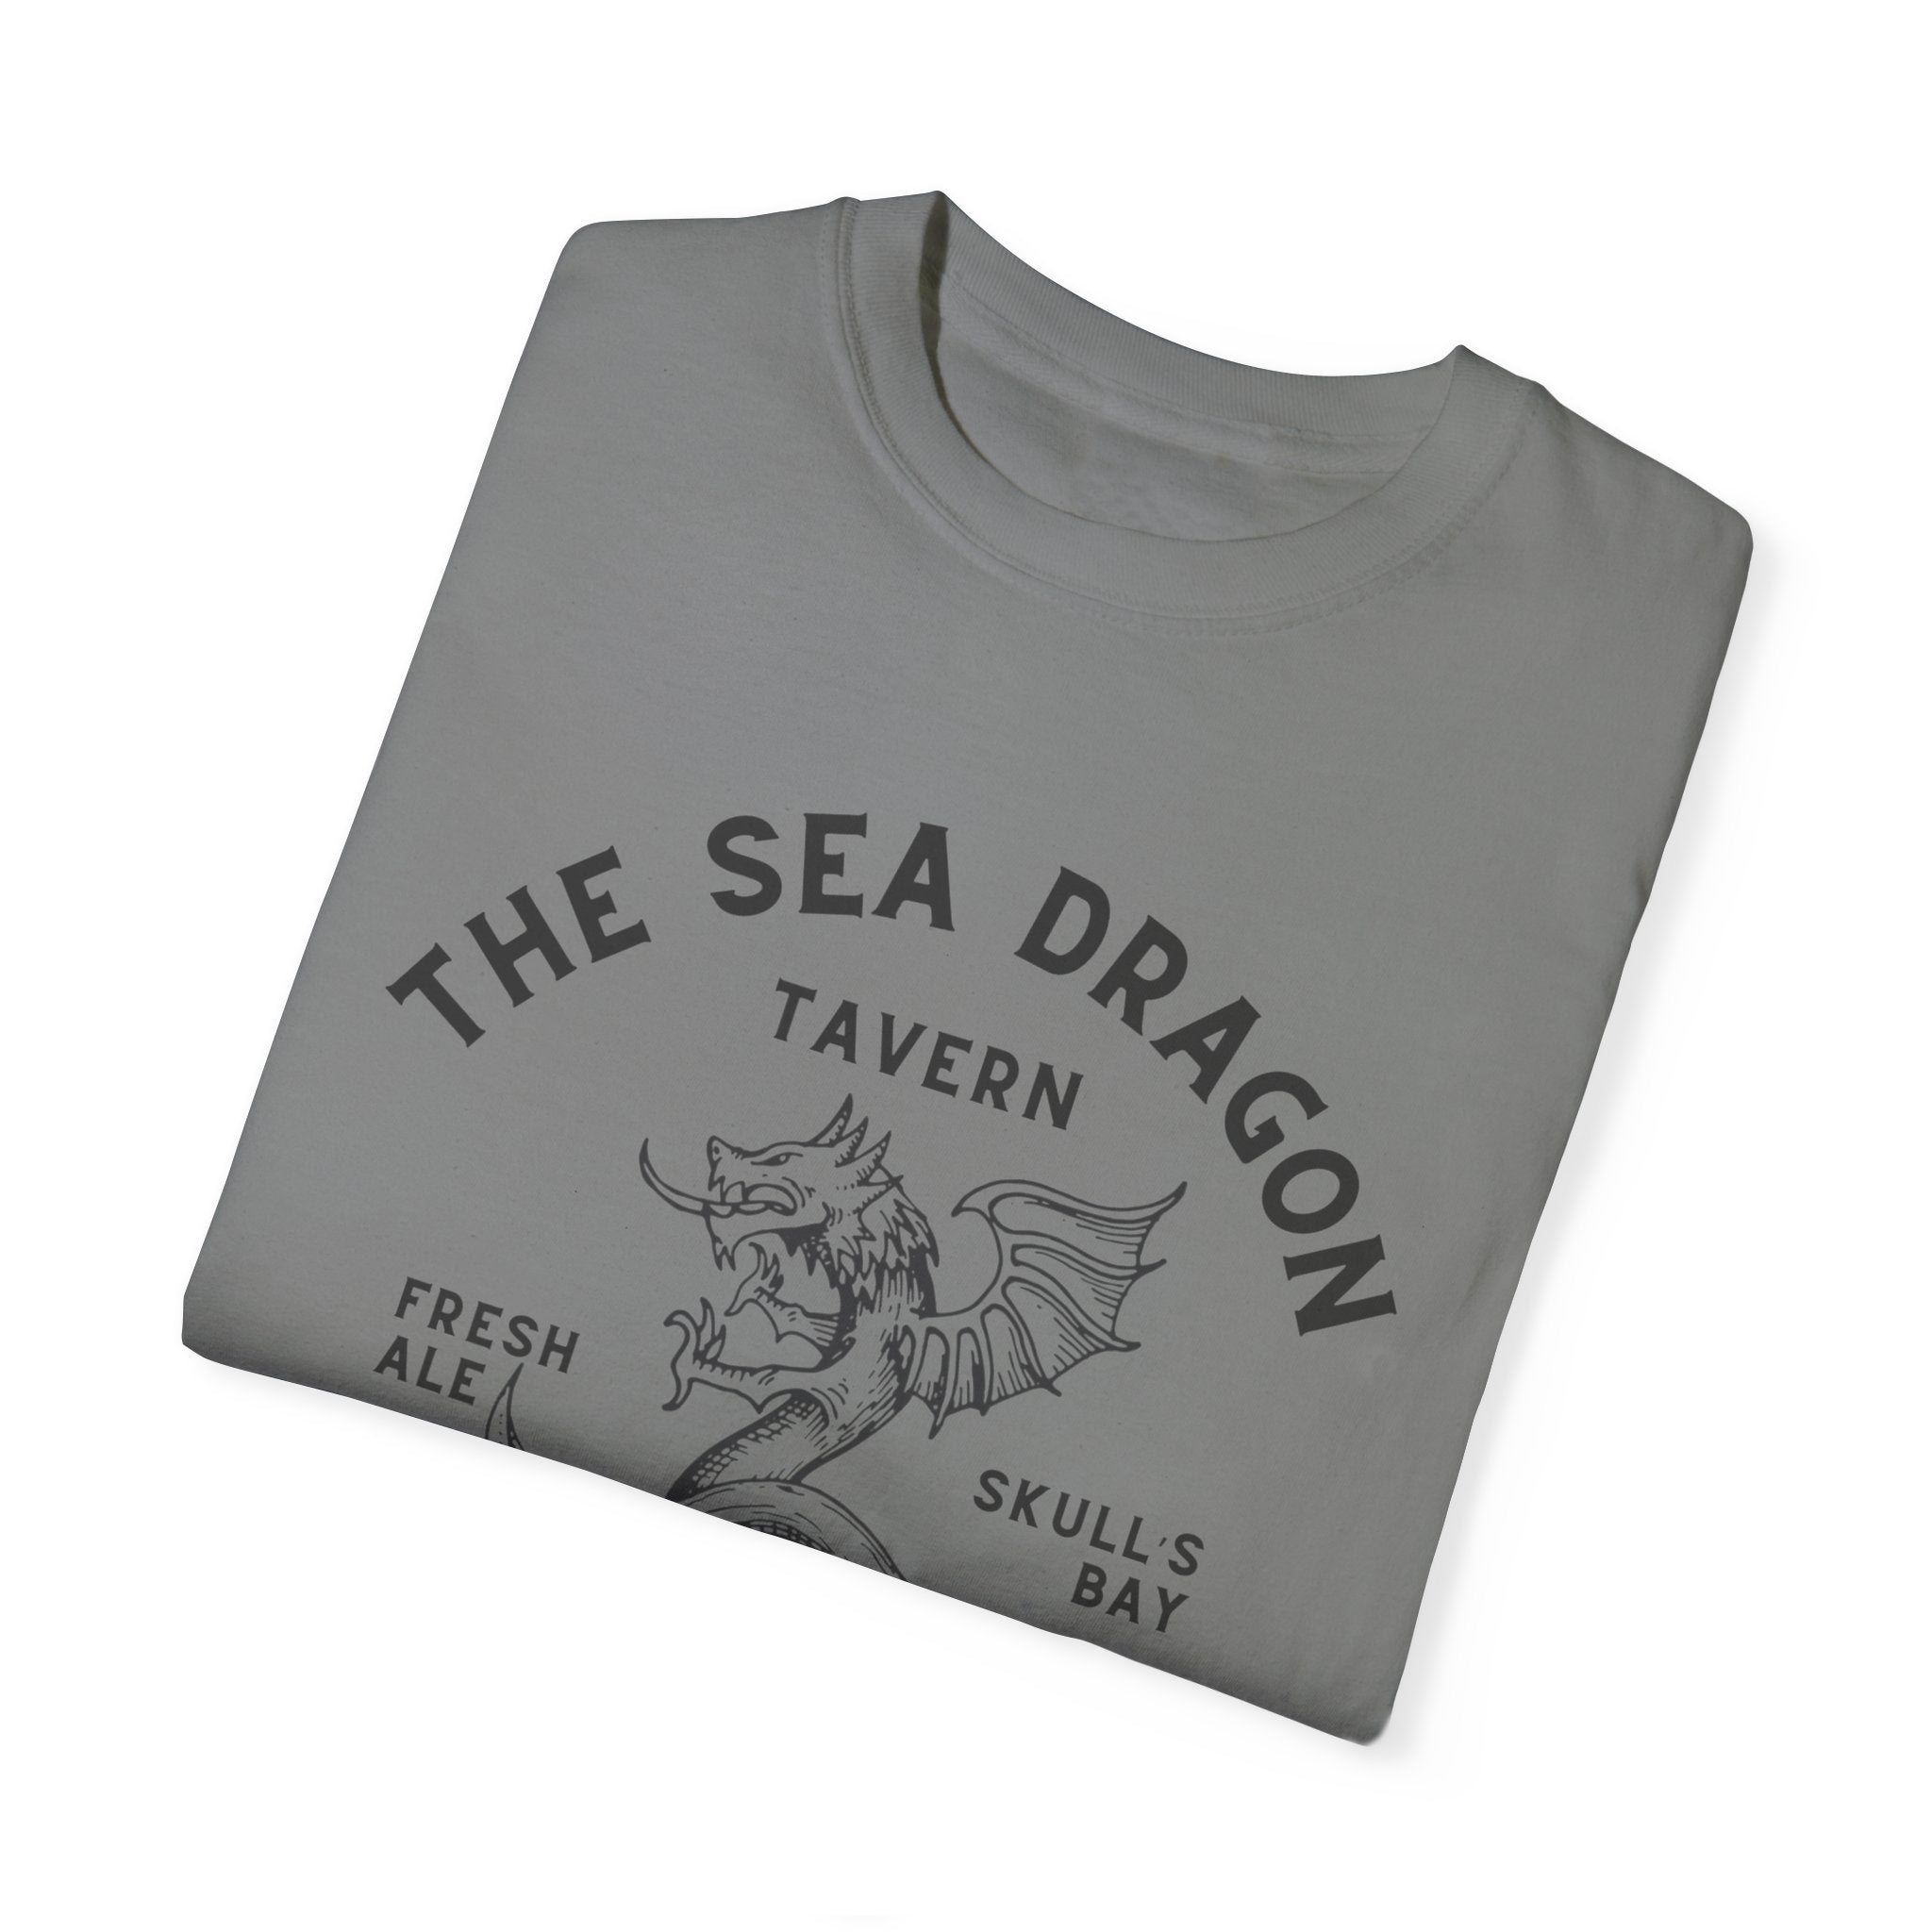 THE SEA DRAGON TEE SHIRT